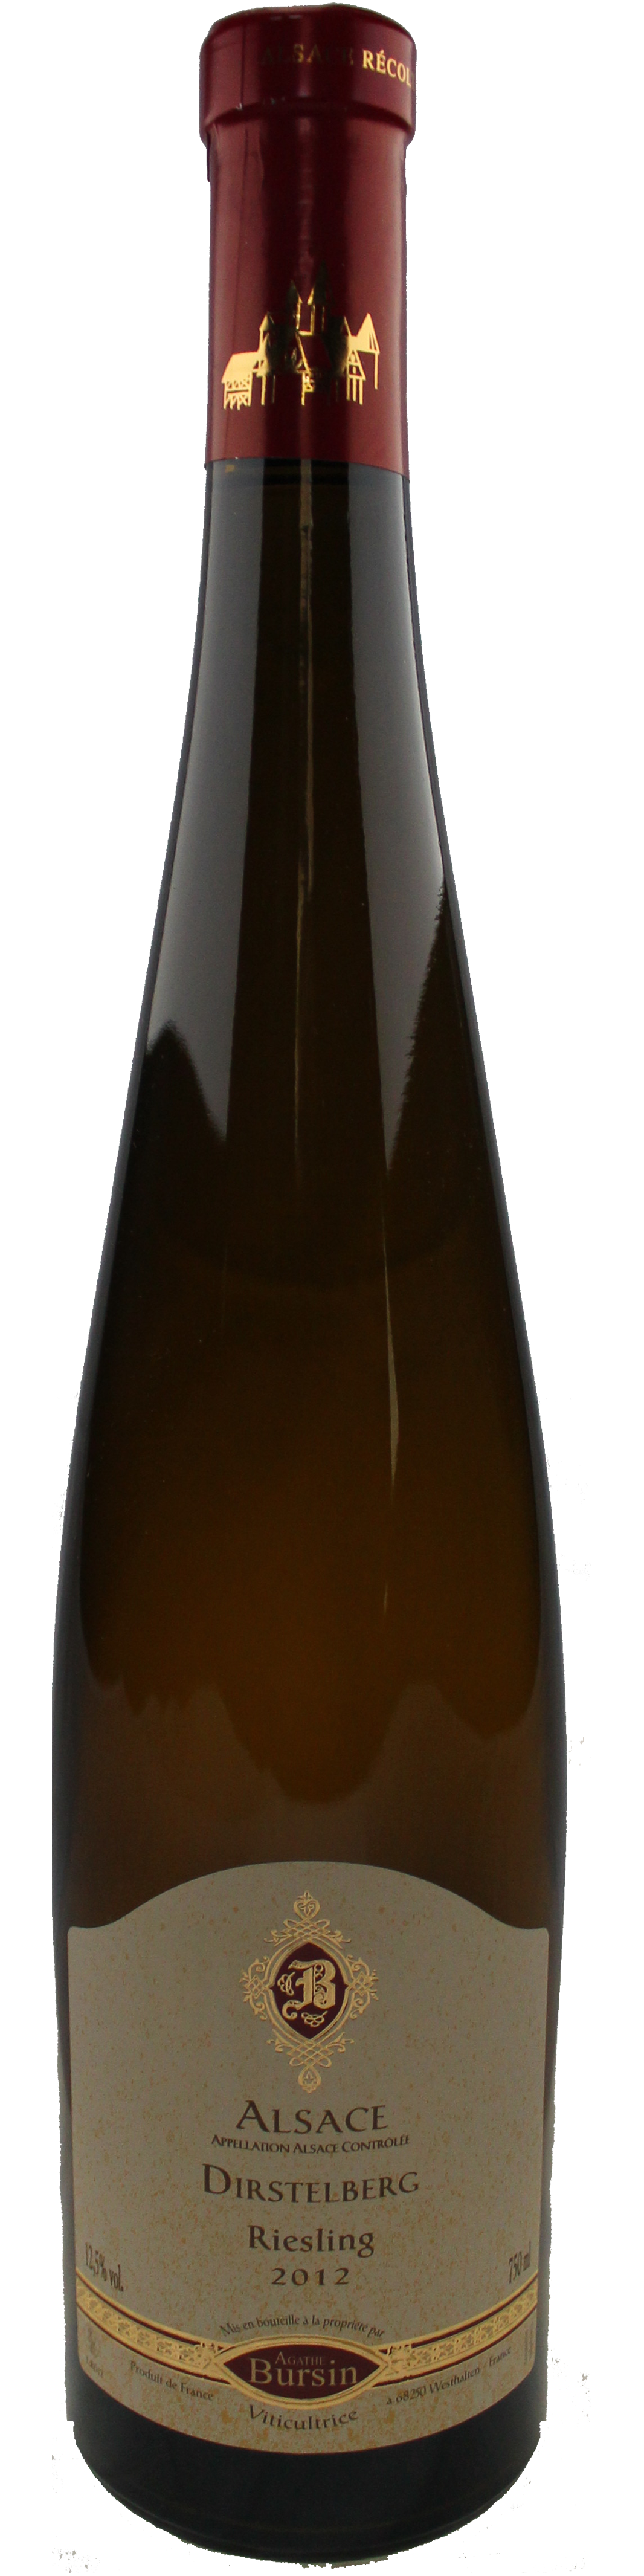 Bottle shot of 2012 Riesling Dirstelberg